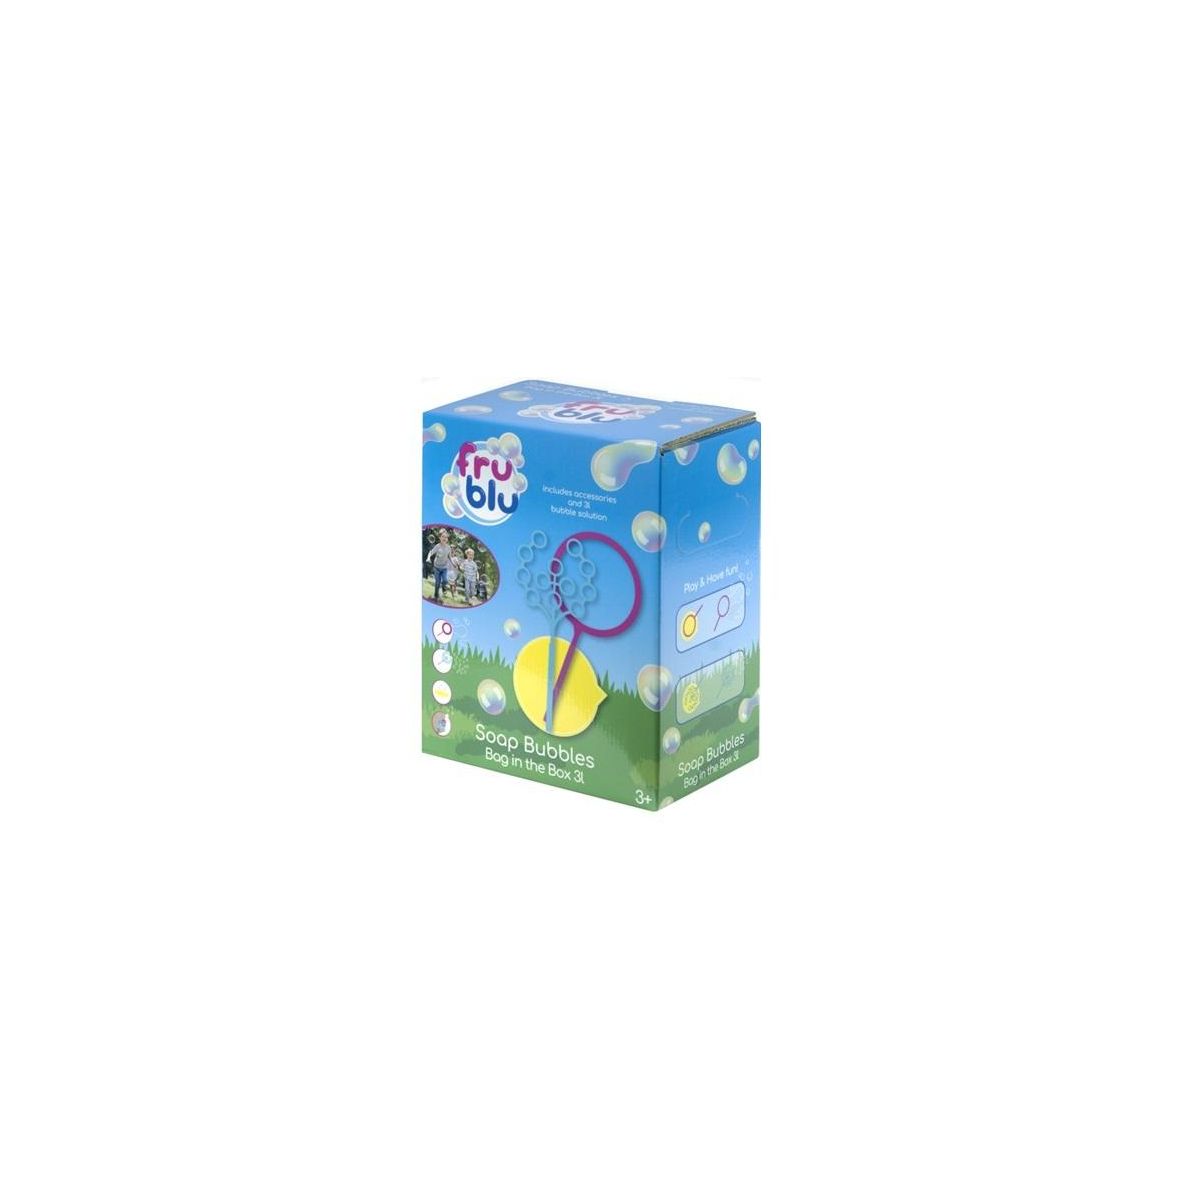 Bańki mydlane Fru Blu Eco 3l + akcesoria Tm Toys (DKF0169)